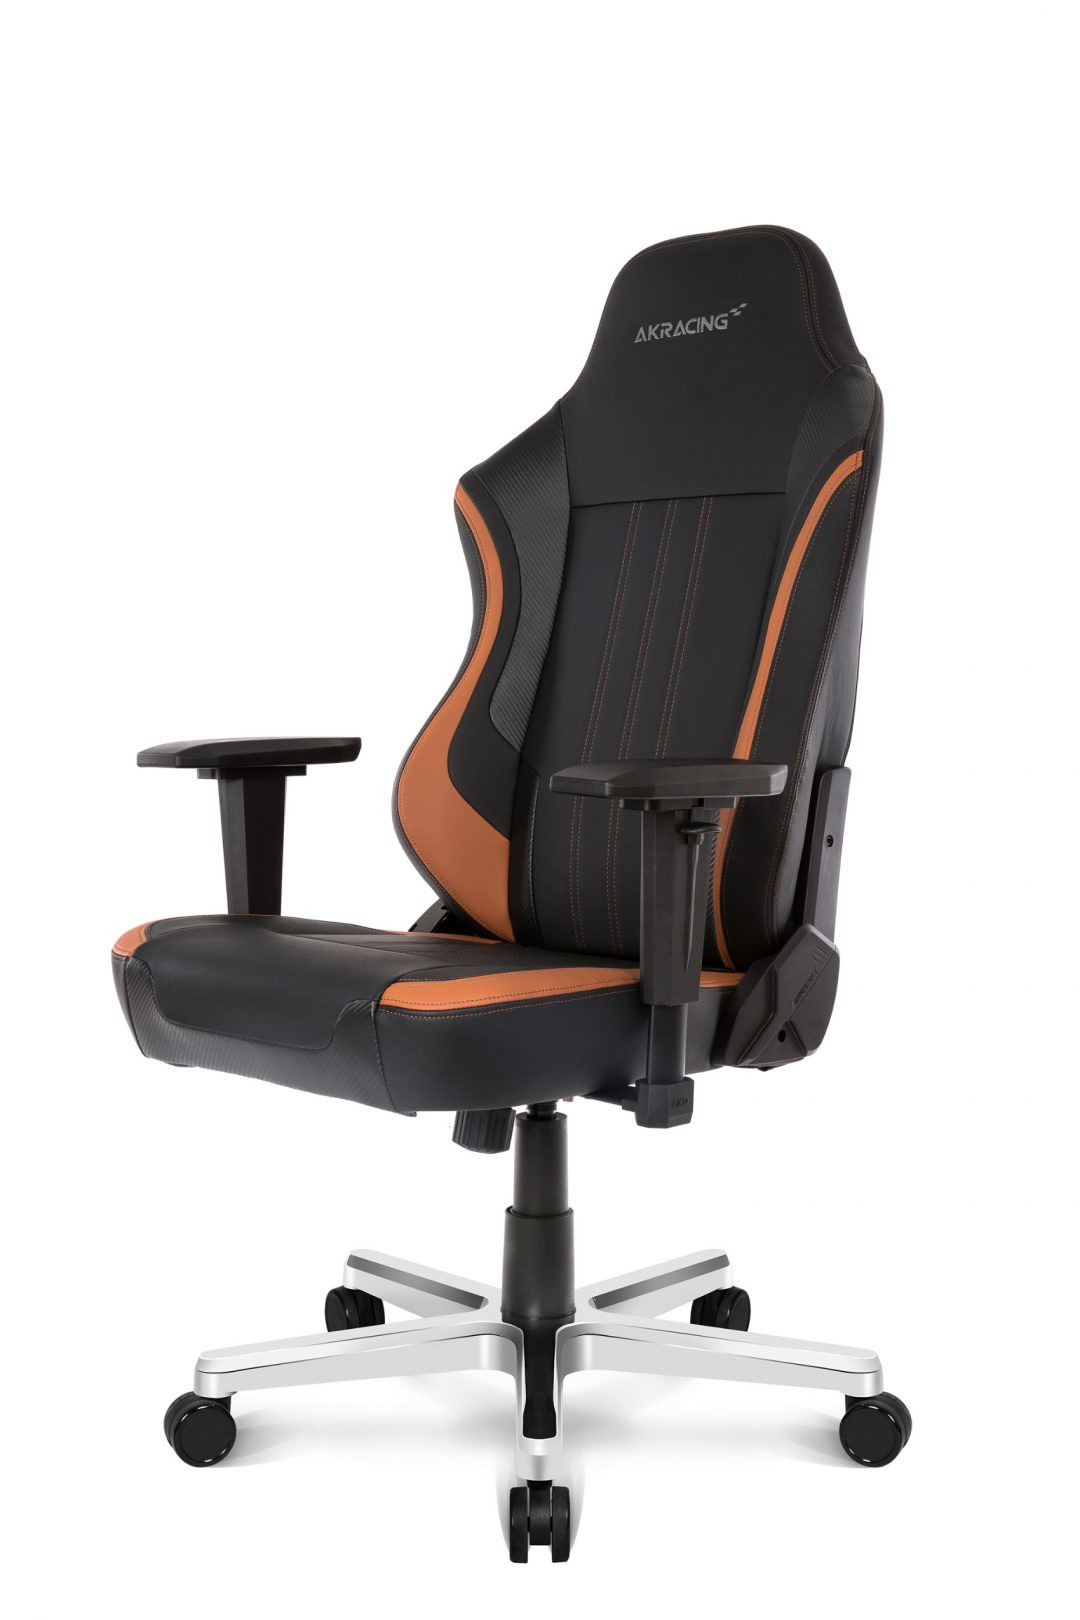 AK Racing Solitude Office Chair hnědá, herní židle | AB-COM.cz